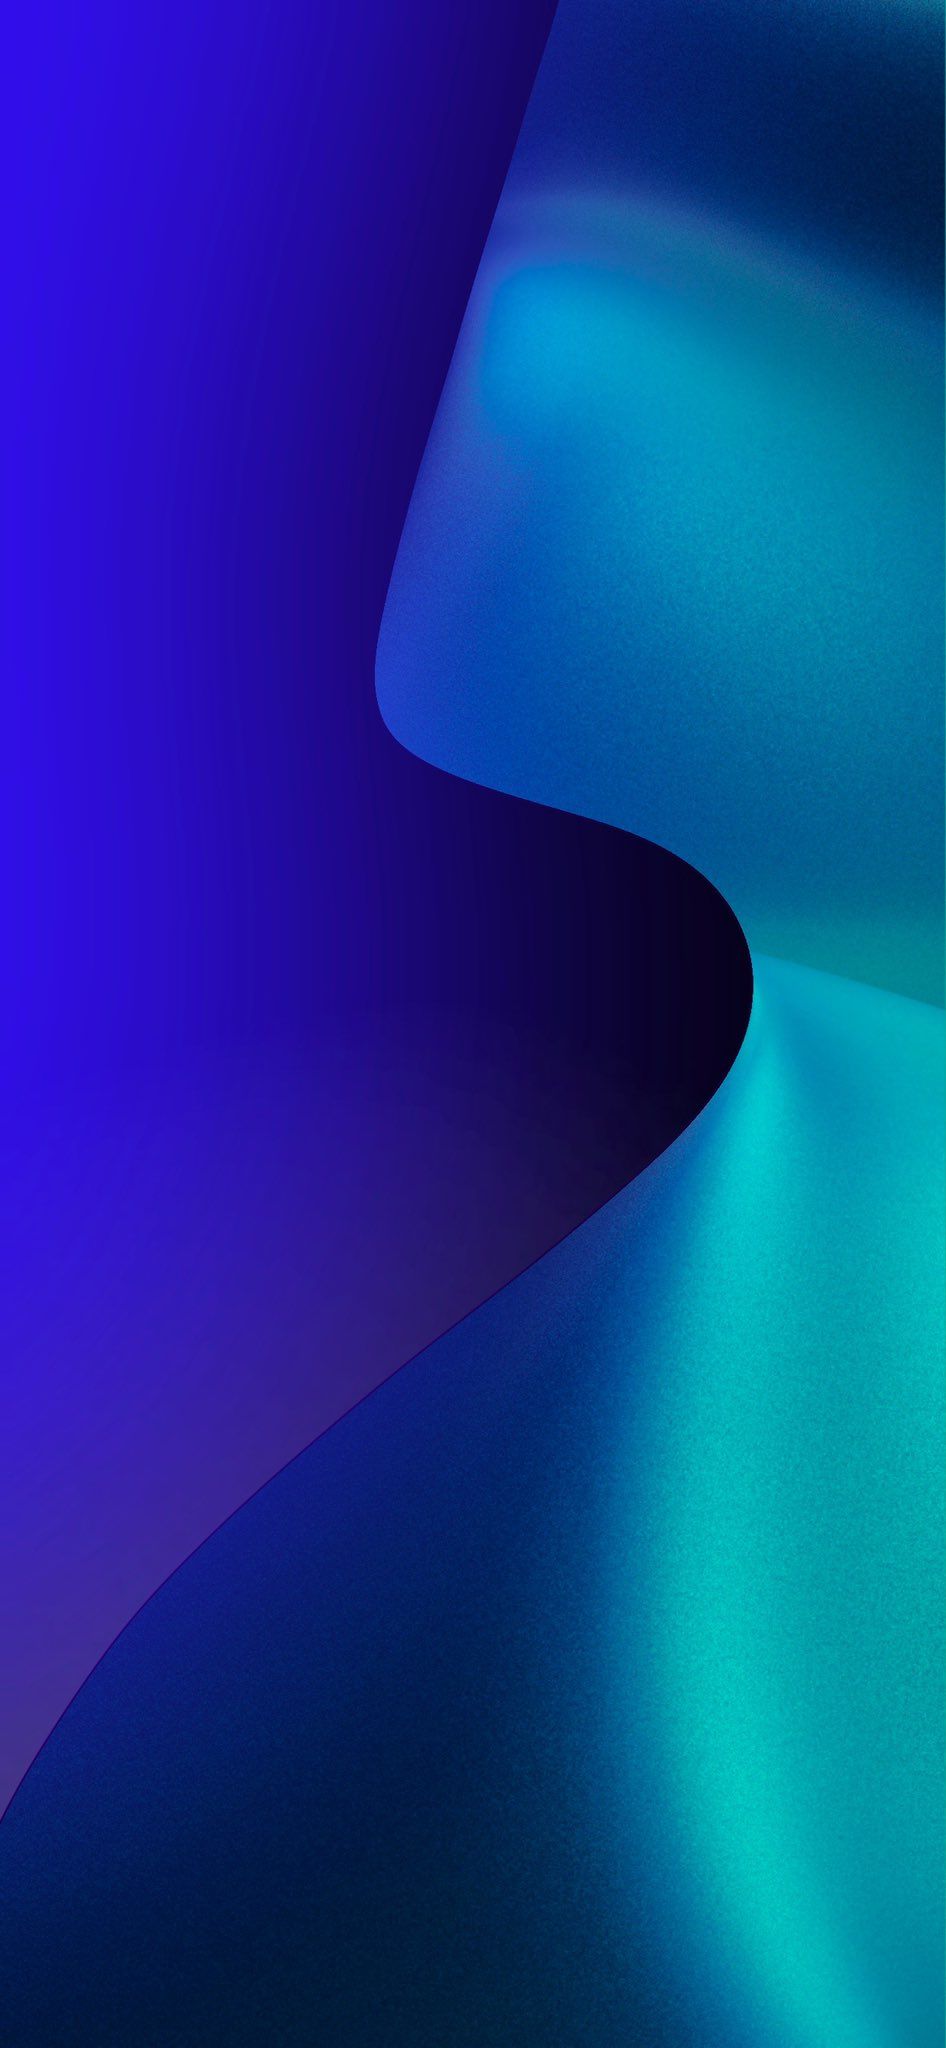 por honor iphone fondo de pantalla,azul,agua,azul eléctrico,azul cobalto,púrpura